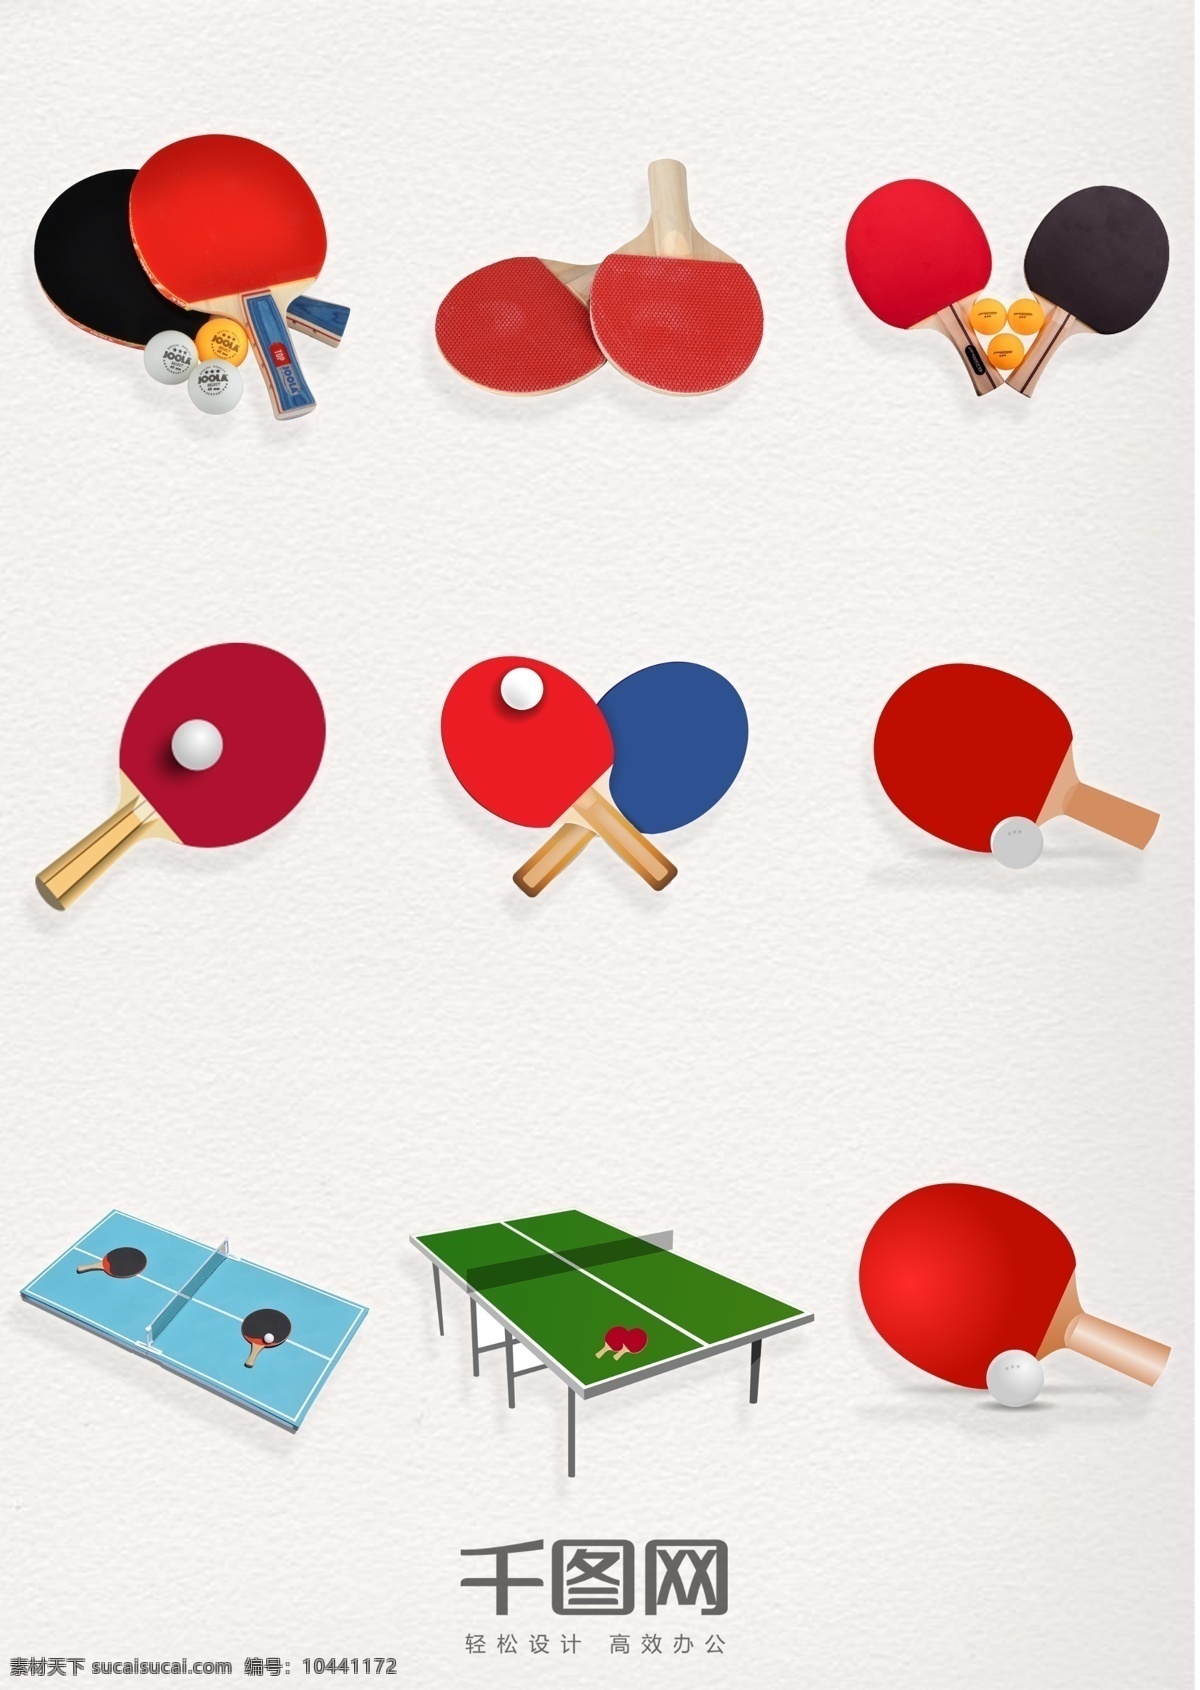 乒乓球 彩色 元素 图案 乒乓球元素 乒乓球拍图案 乒乓球桌图案 装饰 乒乓球实体 乒乓球拍 乒乓球桌